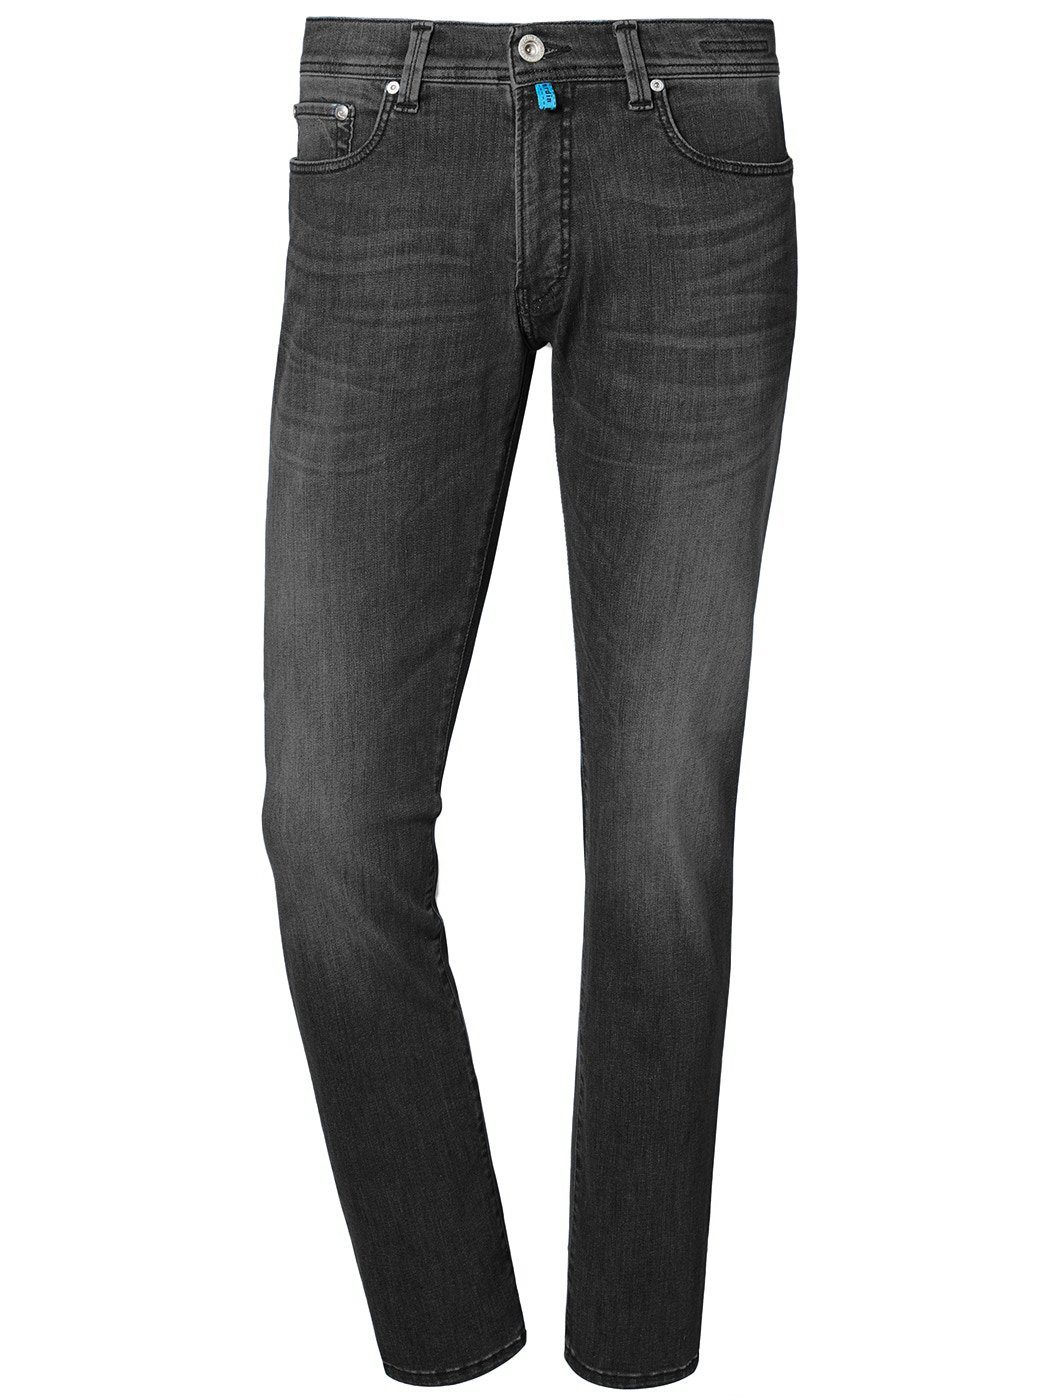 Pierre Cardin 5-Pocket-Jeans PIERRE CARDIN light vintage used 3451 LYON FUTUREFLEX grey 8880.15